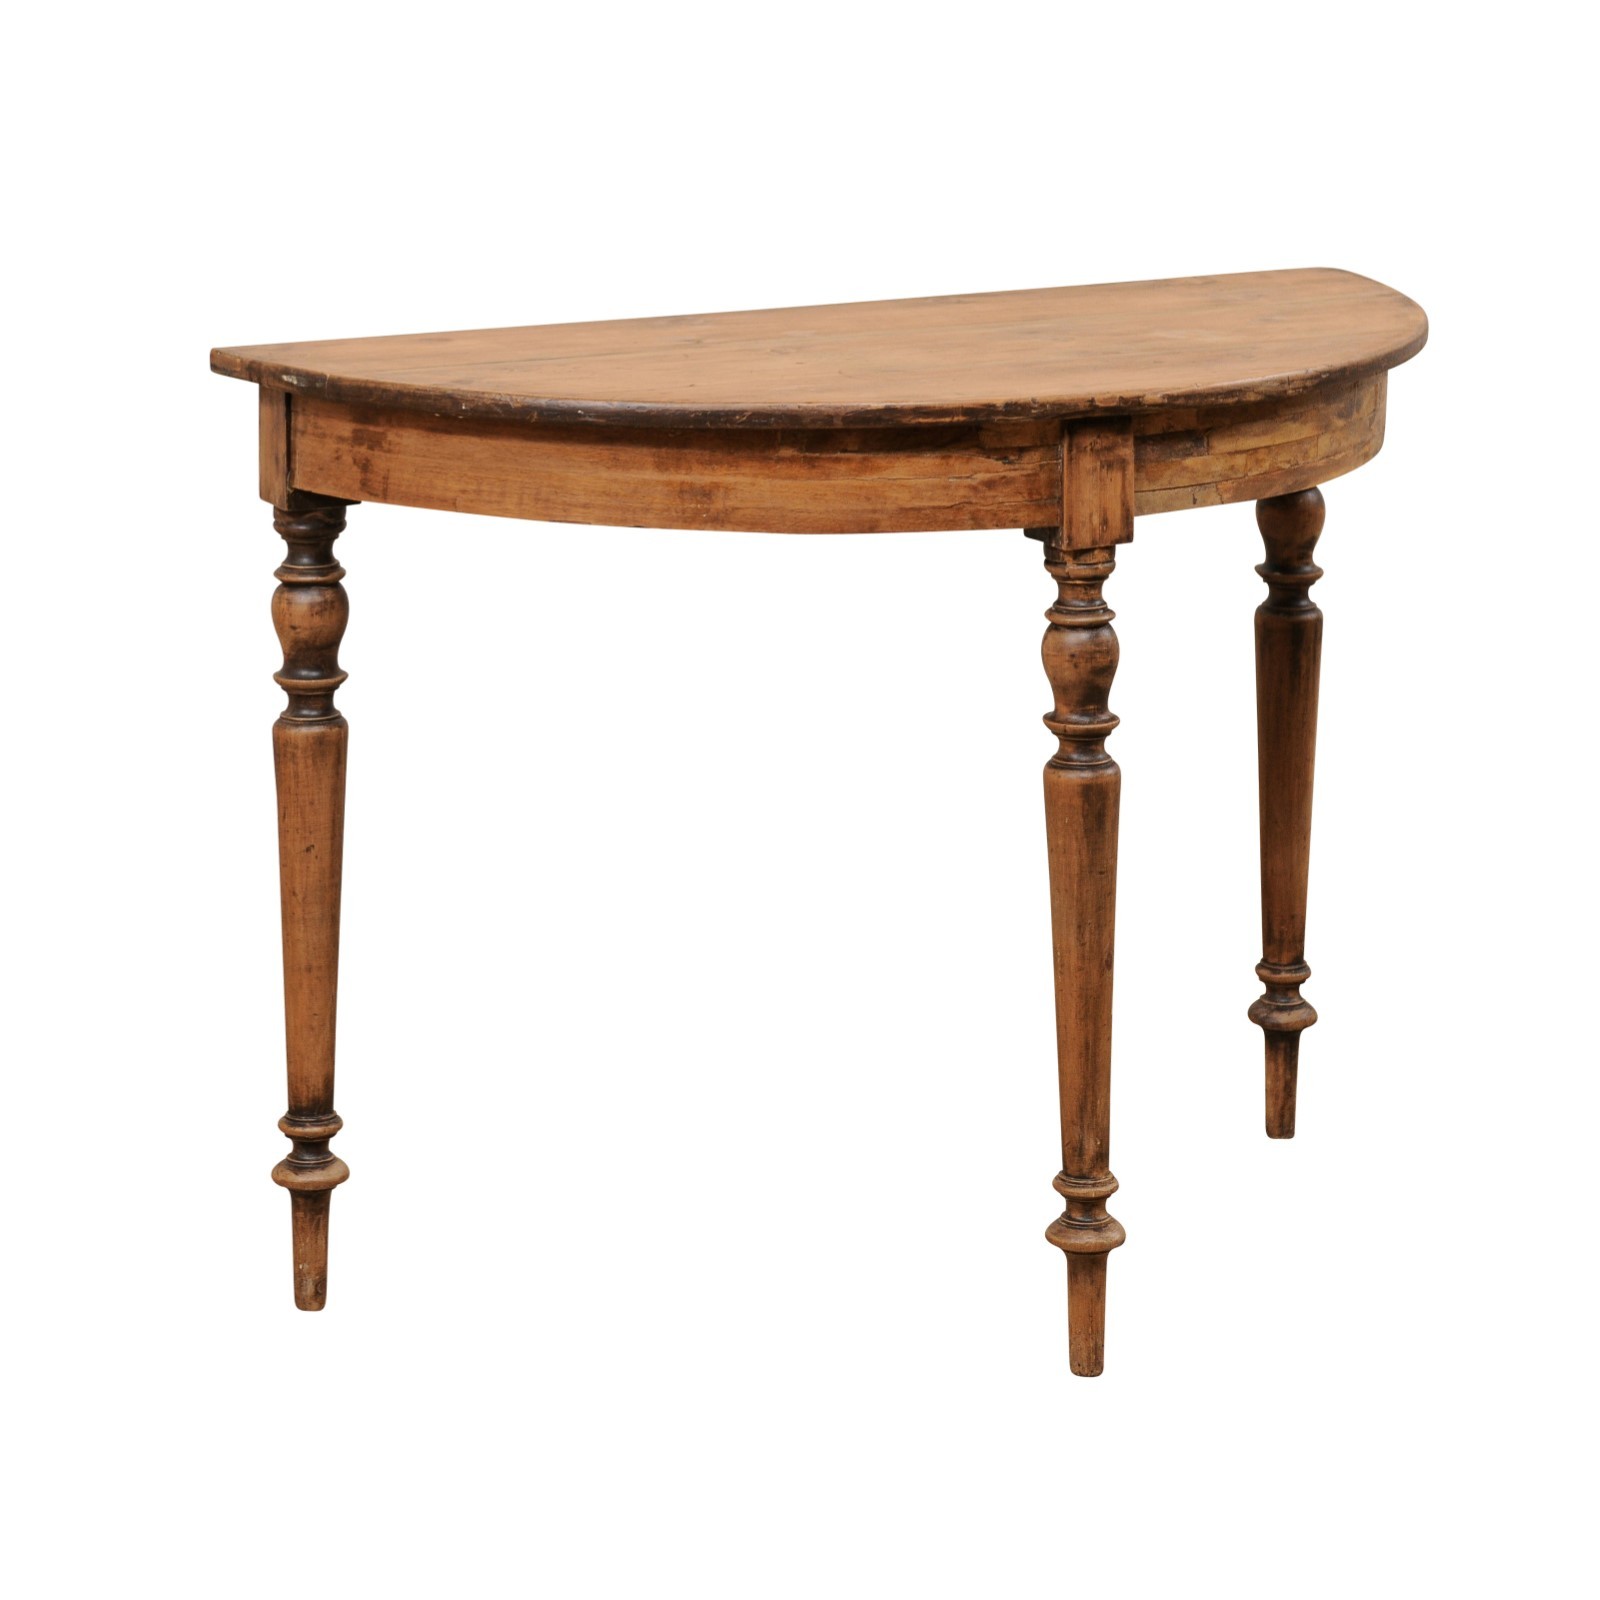 Swedish Wooden Demi-Lune Table, Circa 1880